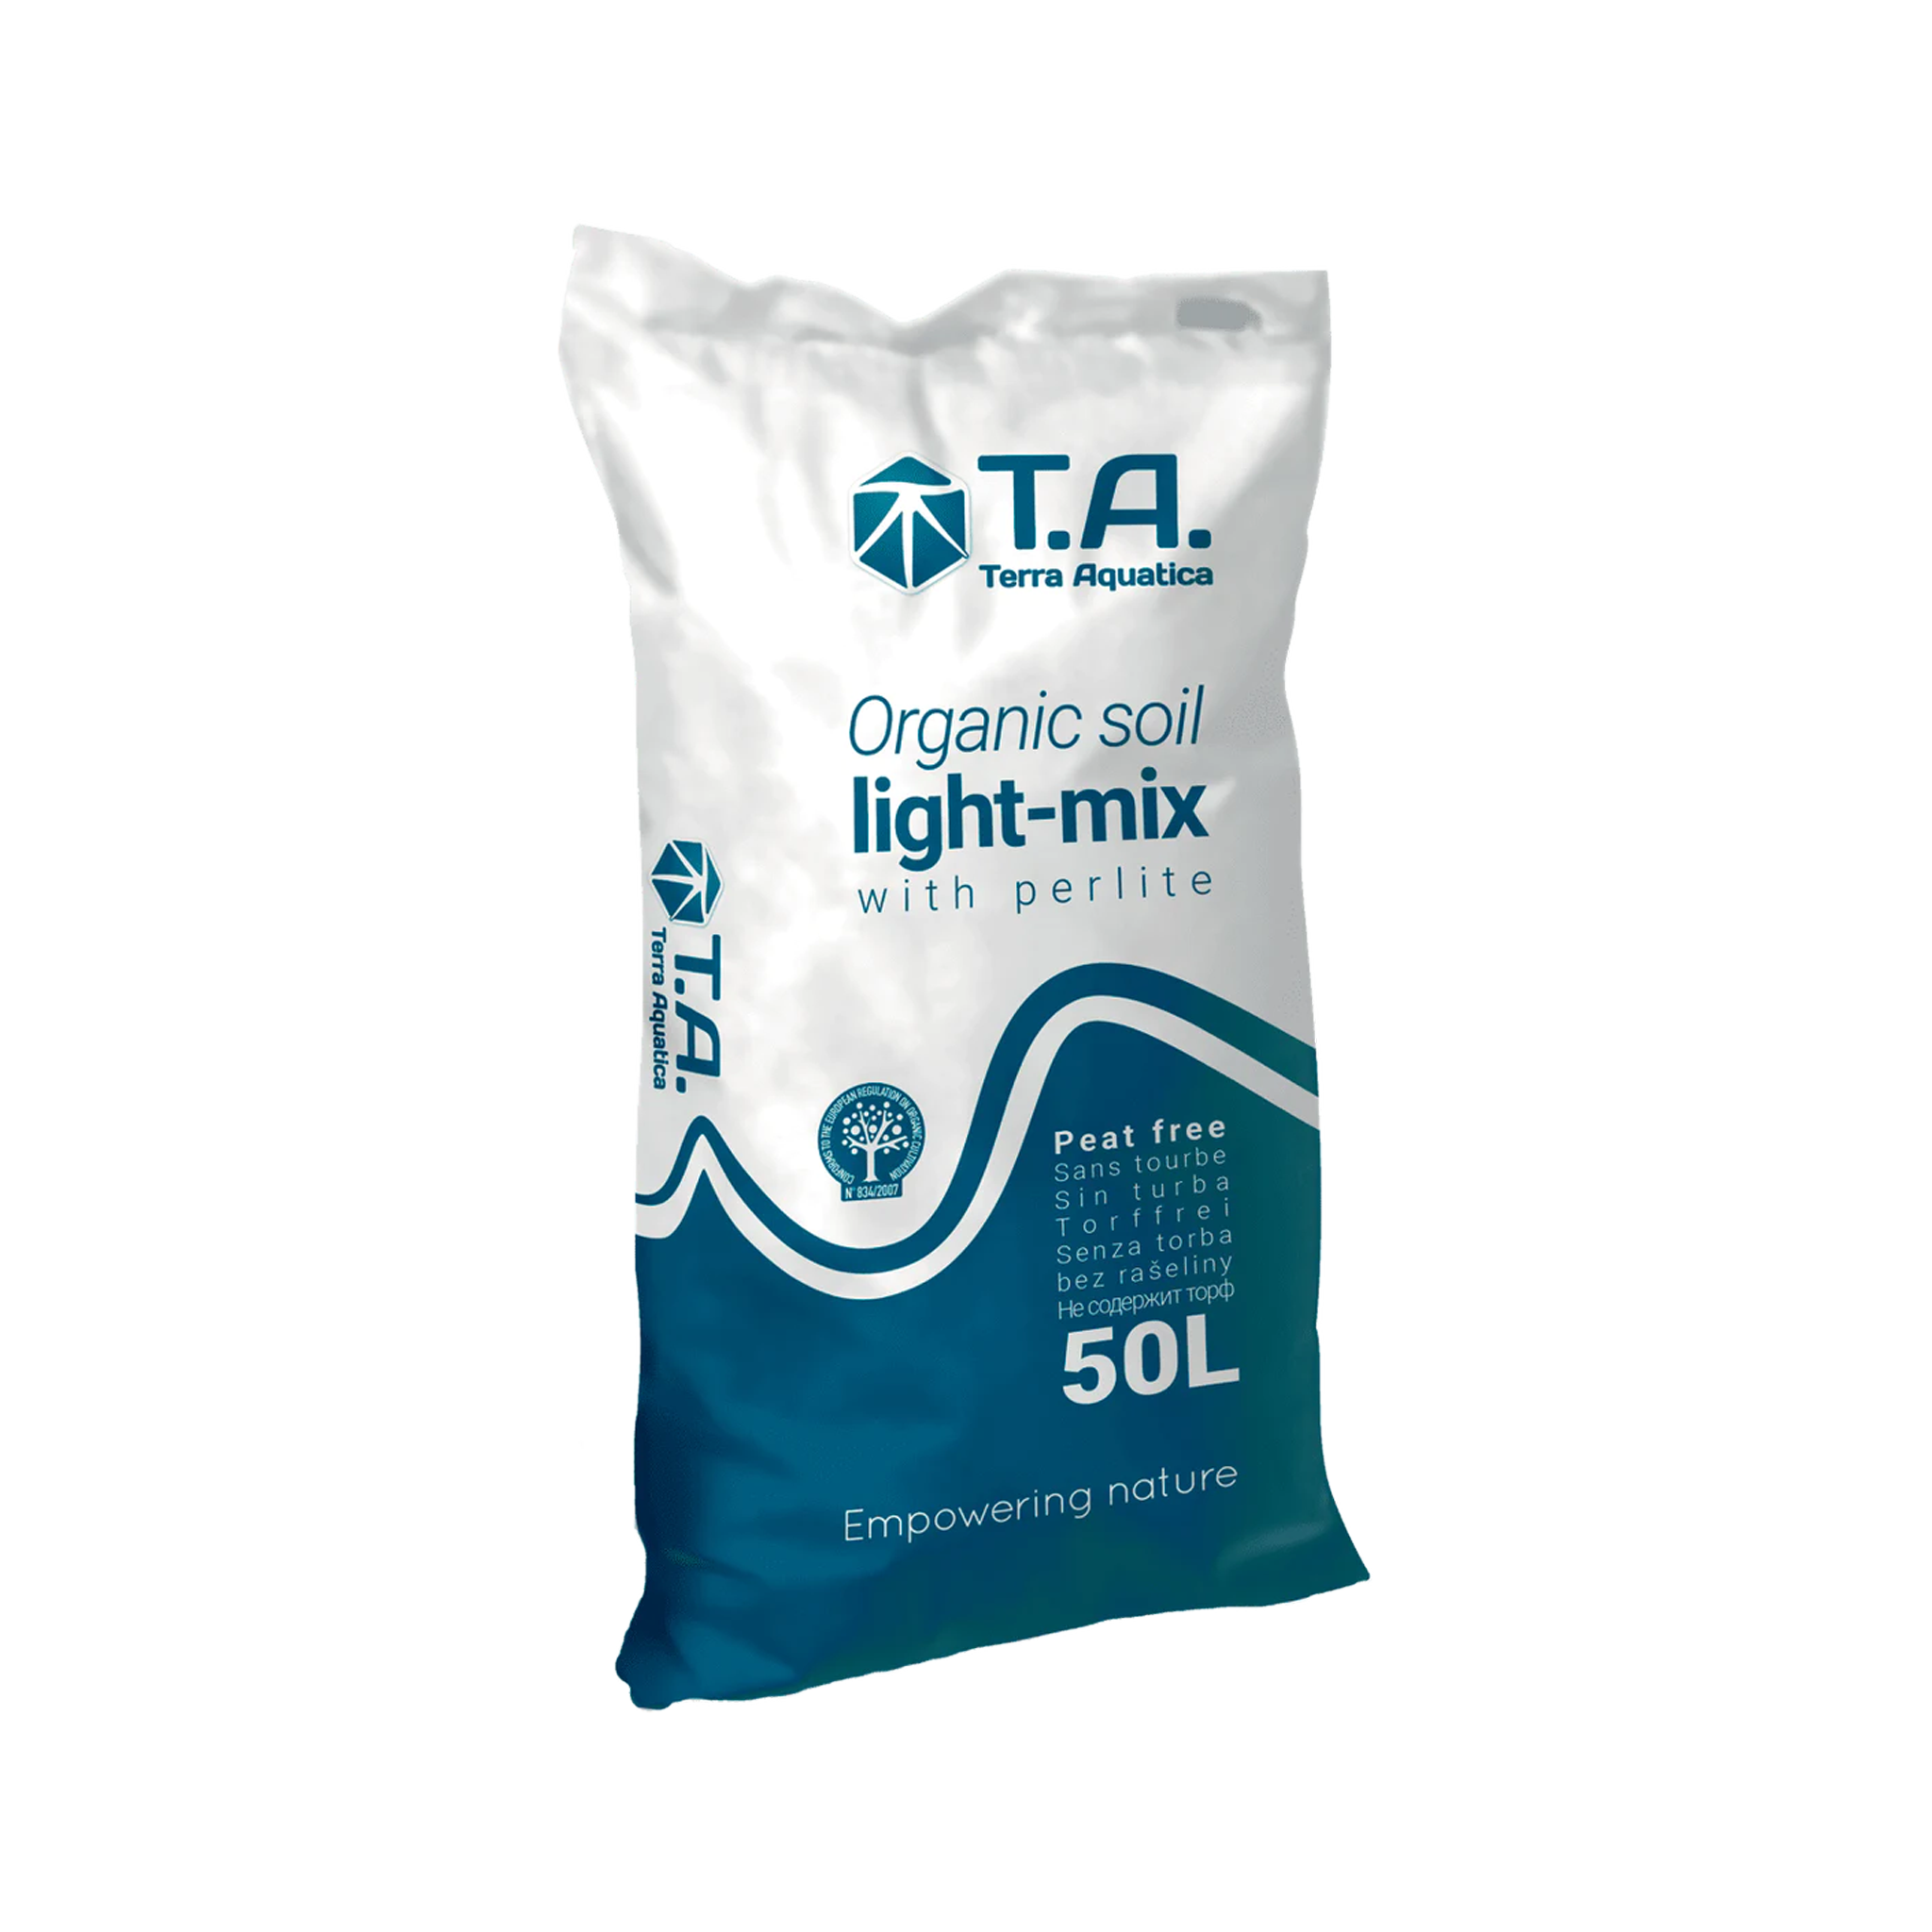 T.A Organic soil light-mix